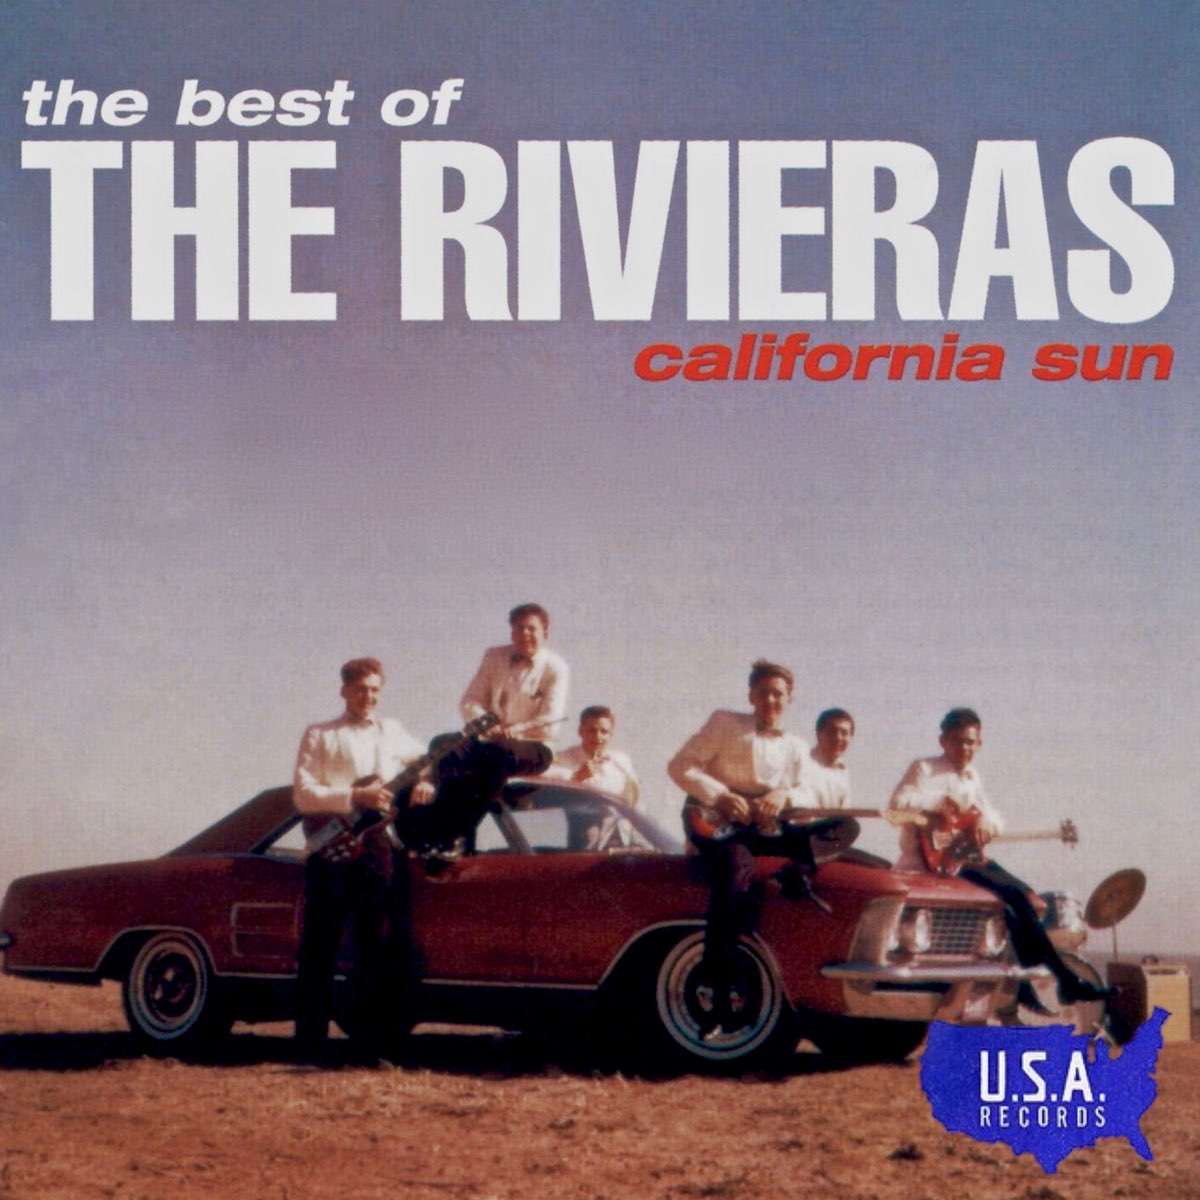 The Rivieras — California Sun cover artwork